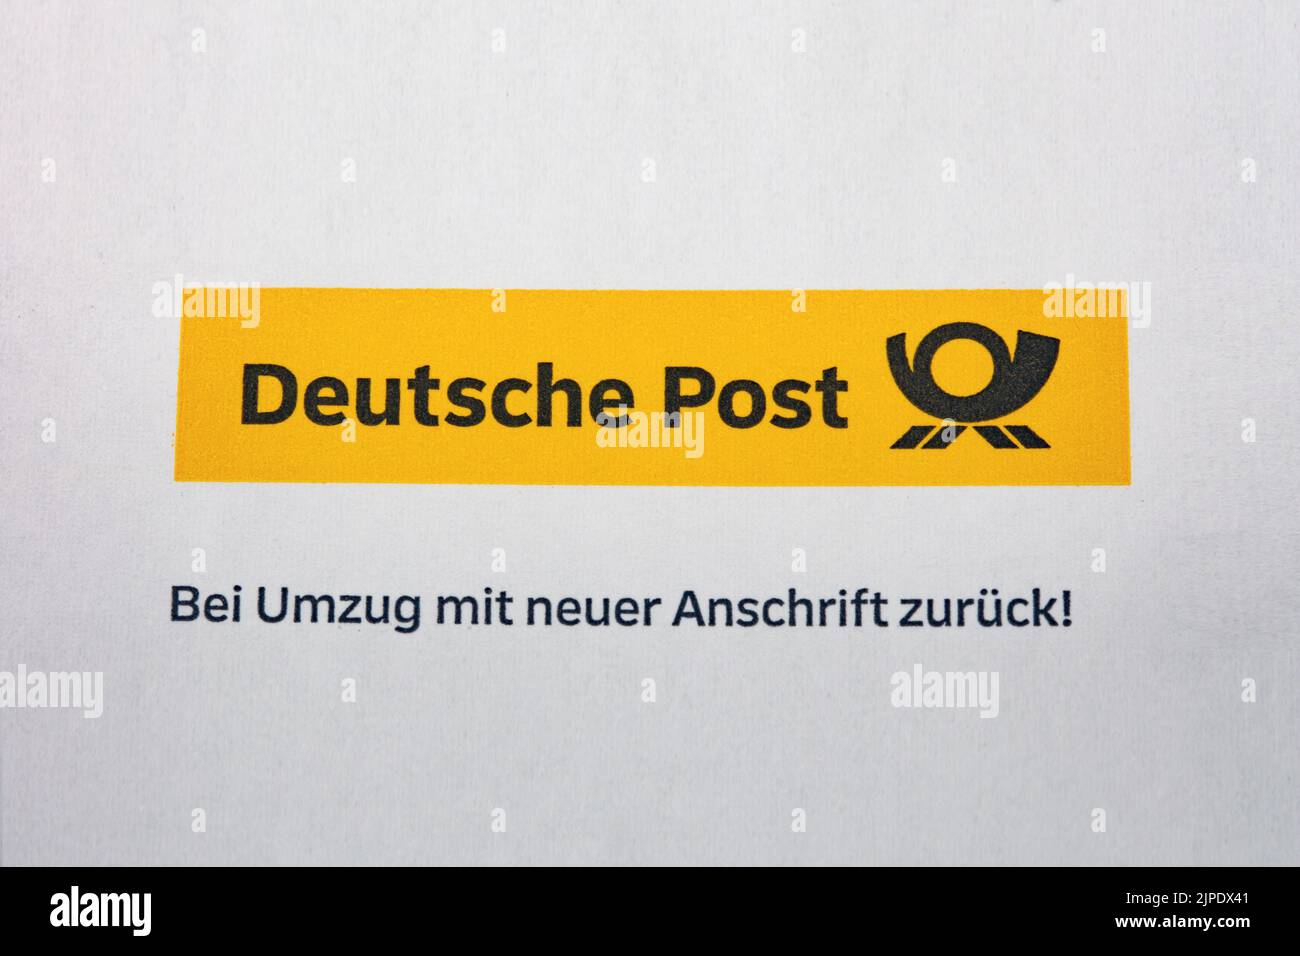 deutsche post, bei umzug mit neuer anschrift zurück Stock Photo